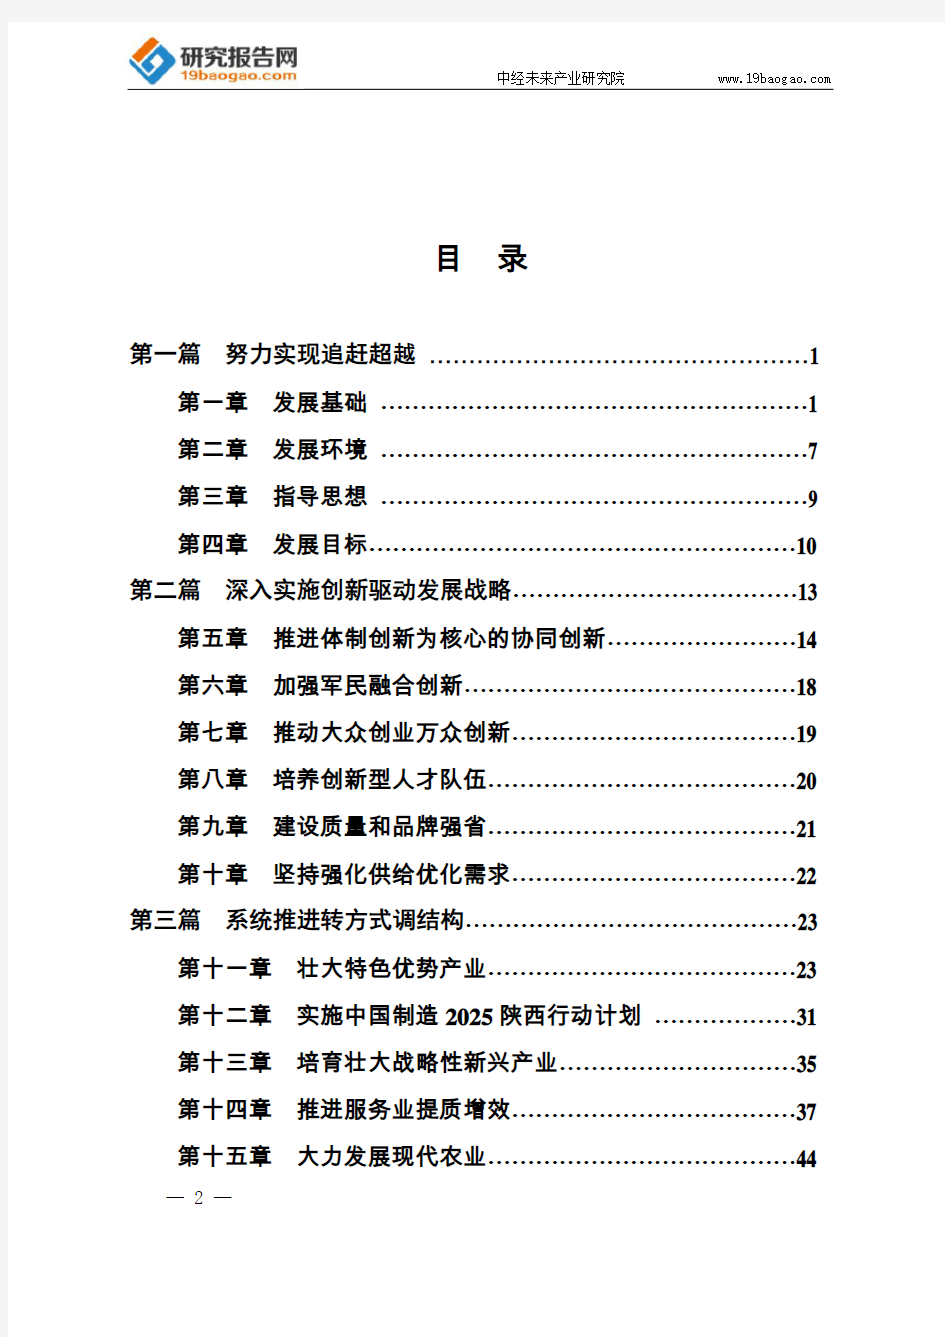 陕西省国民经济和社会发展第十三个五年规划纲要(最全版)